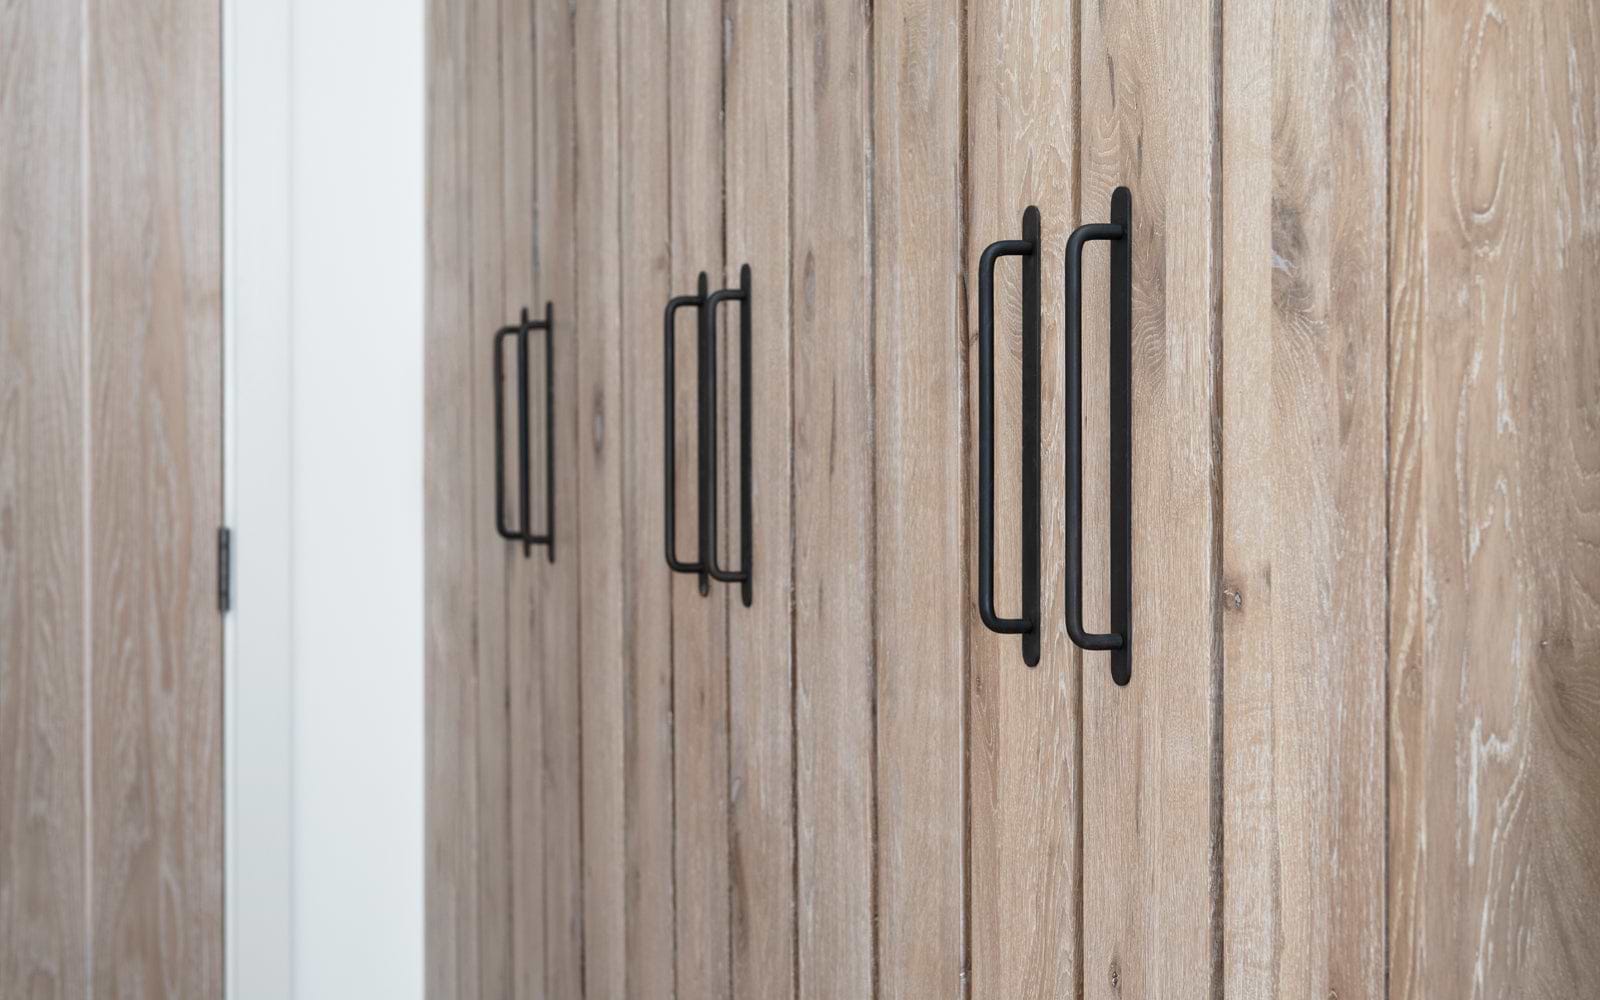 Corston bronze kilburn furniture handle on wooden doors